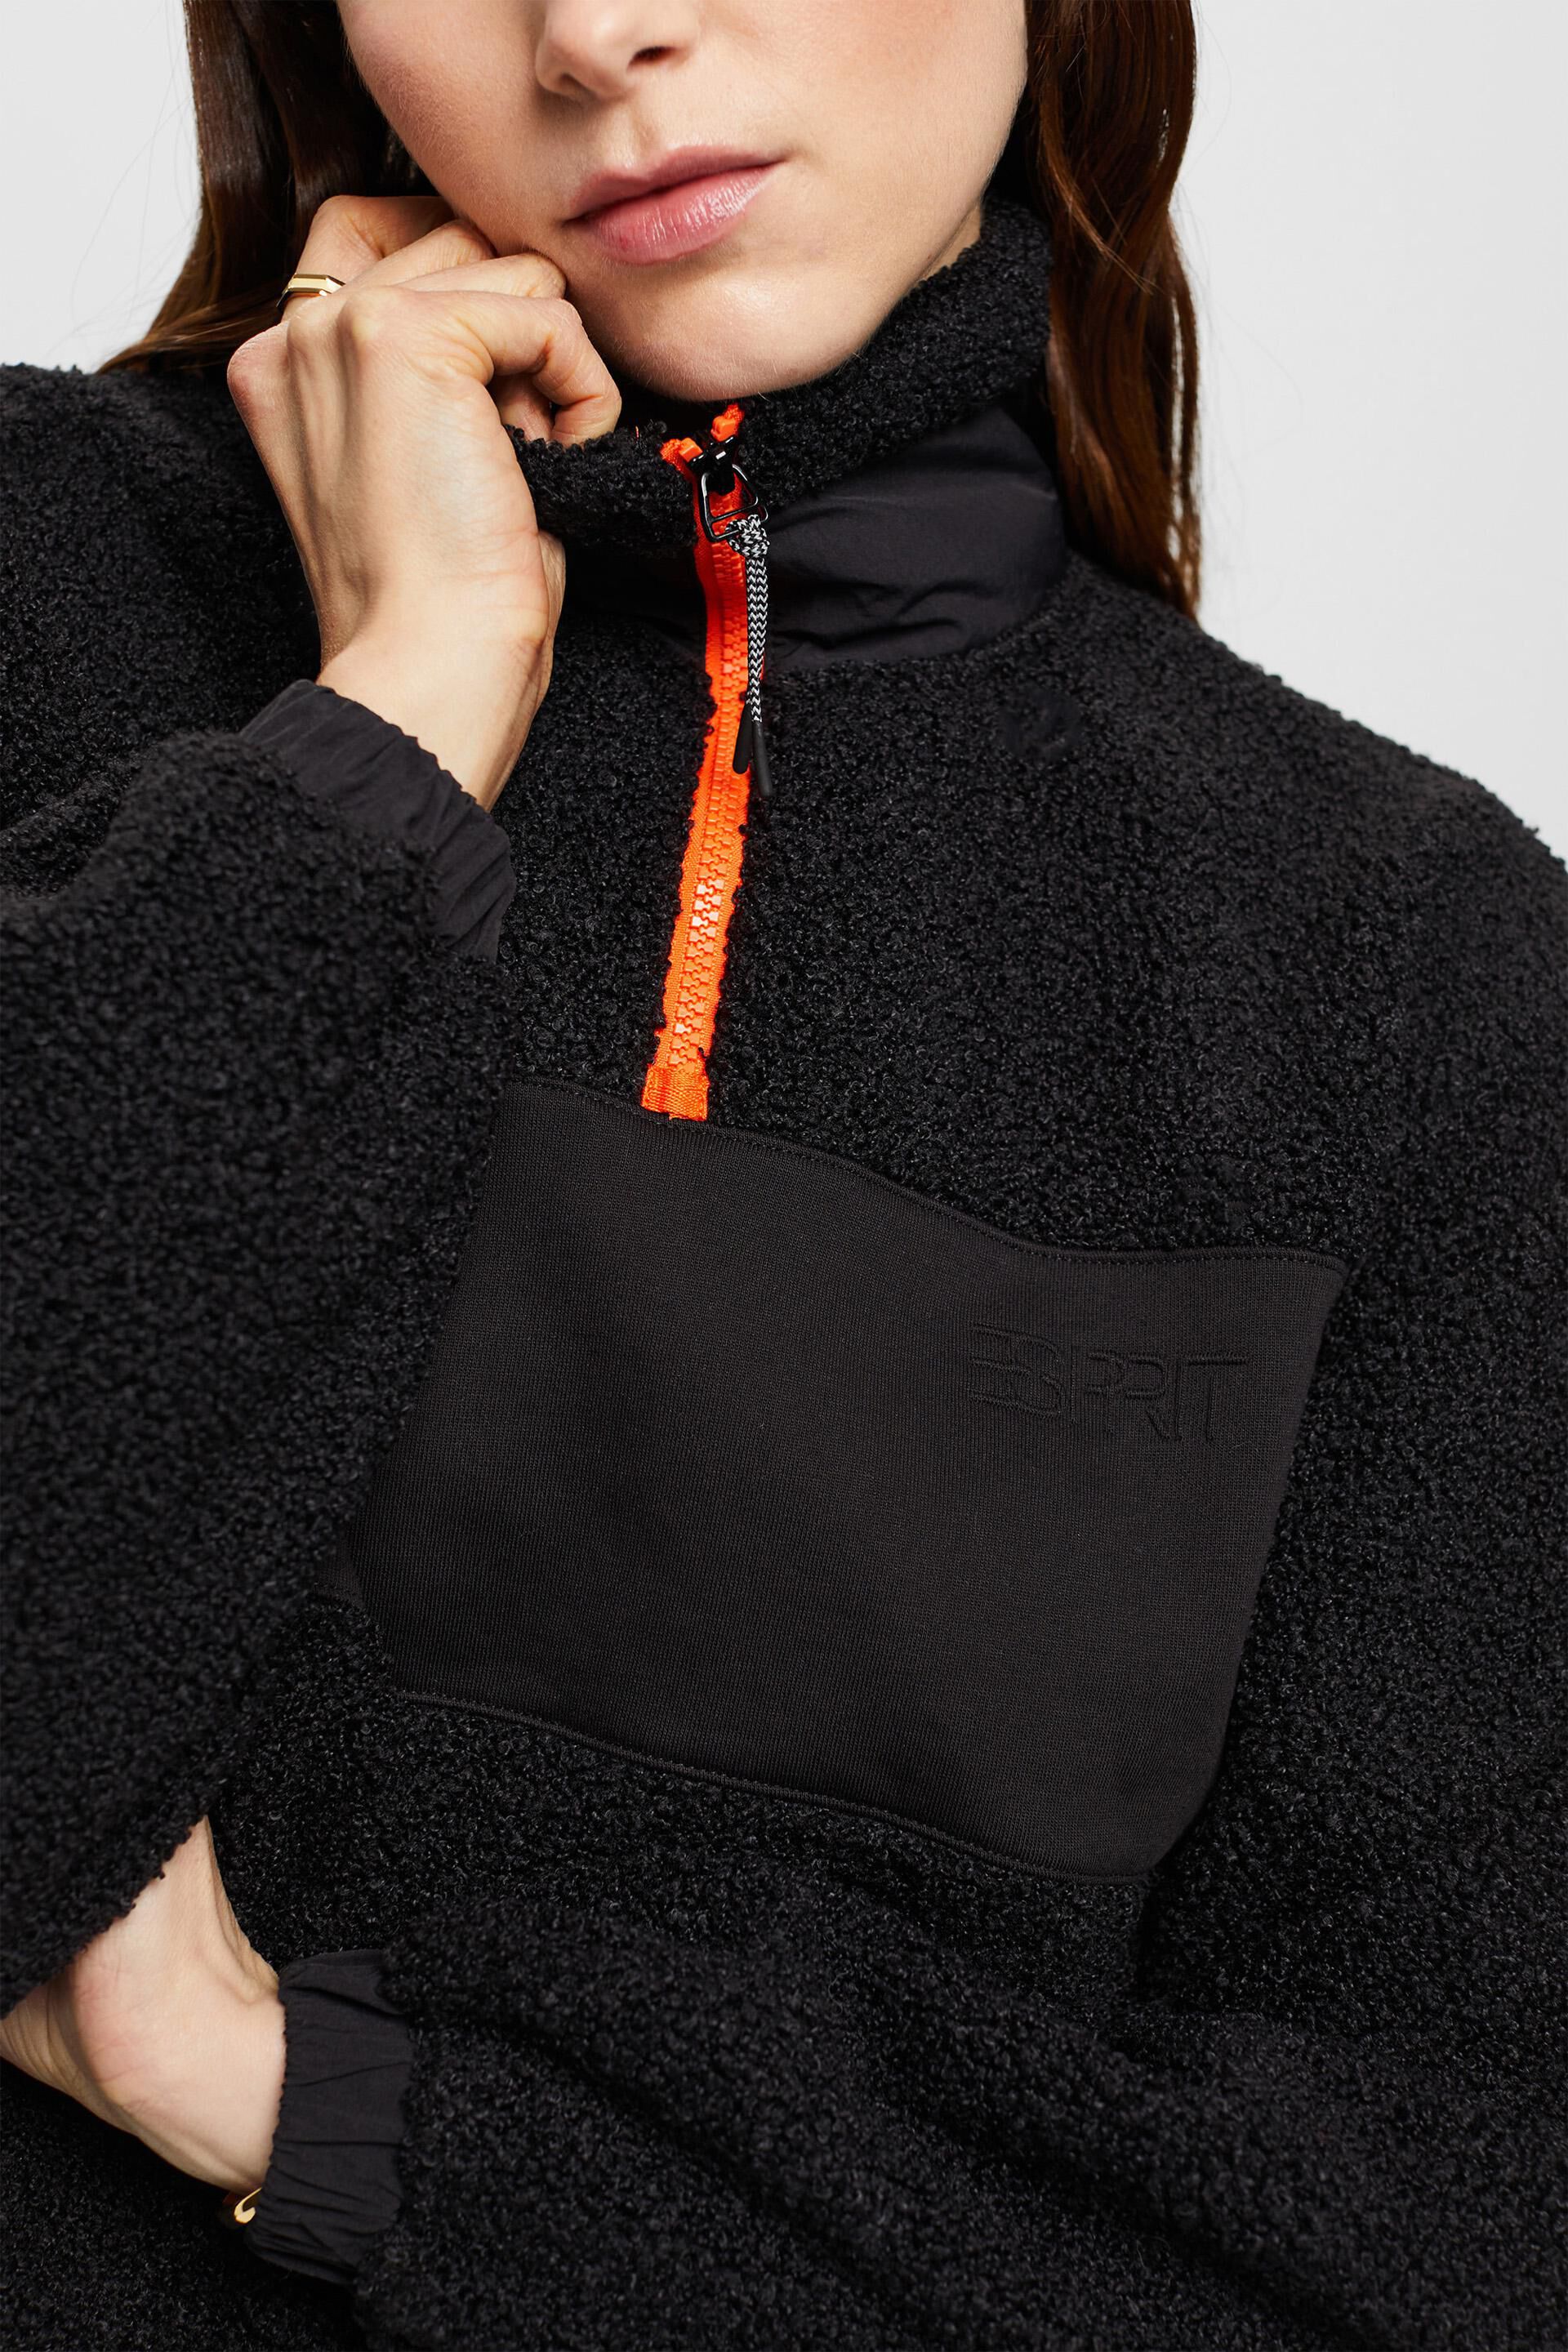 Esprit Sweatshirt gemischtem mit Reißverschluss Material halbem aus